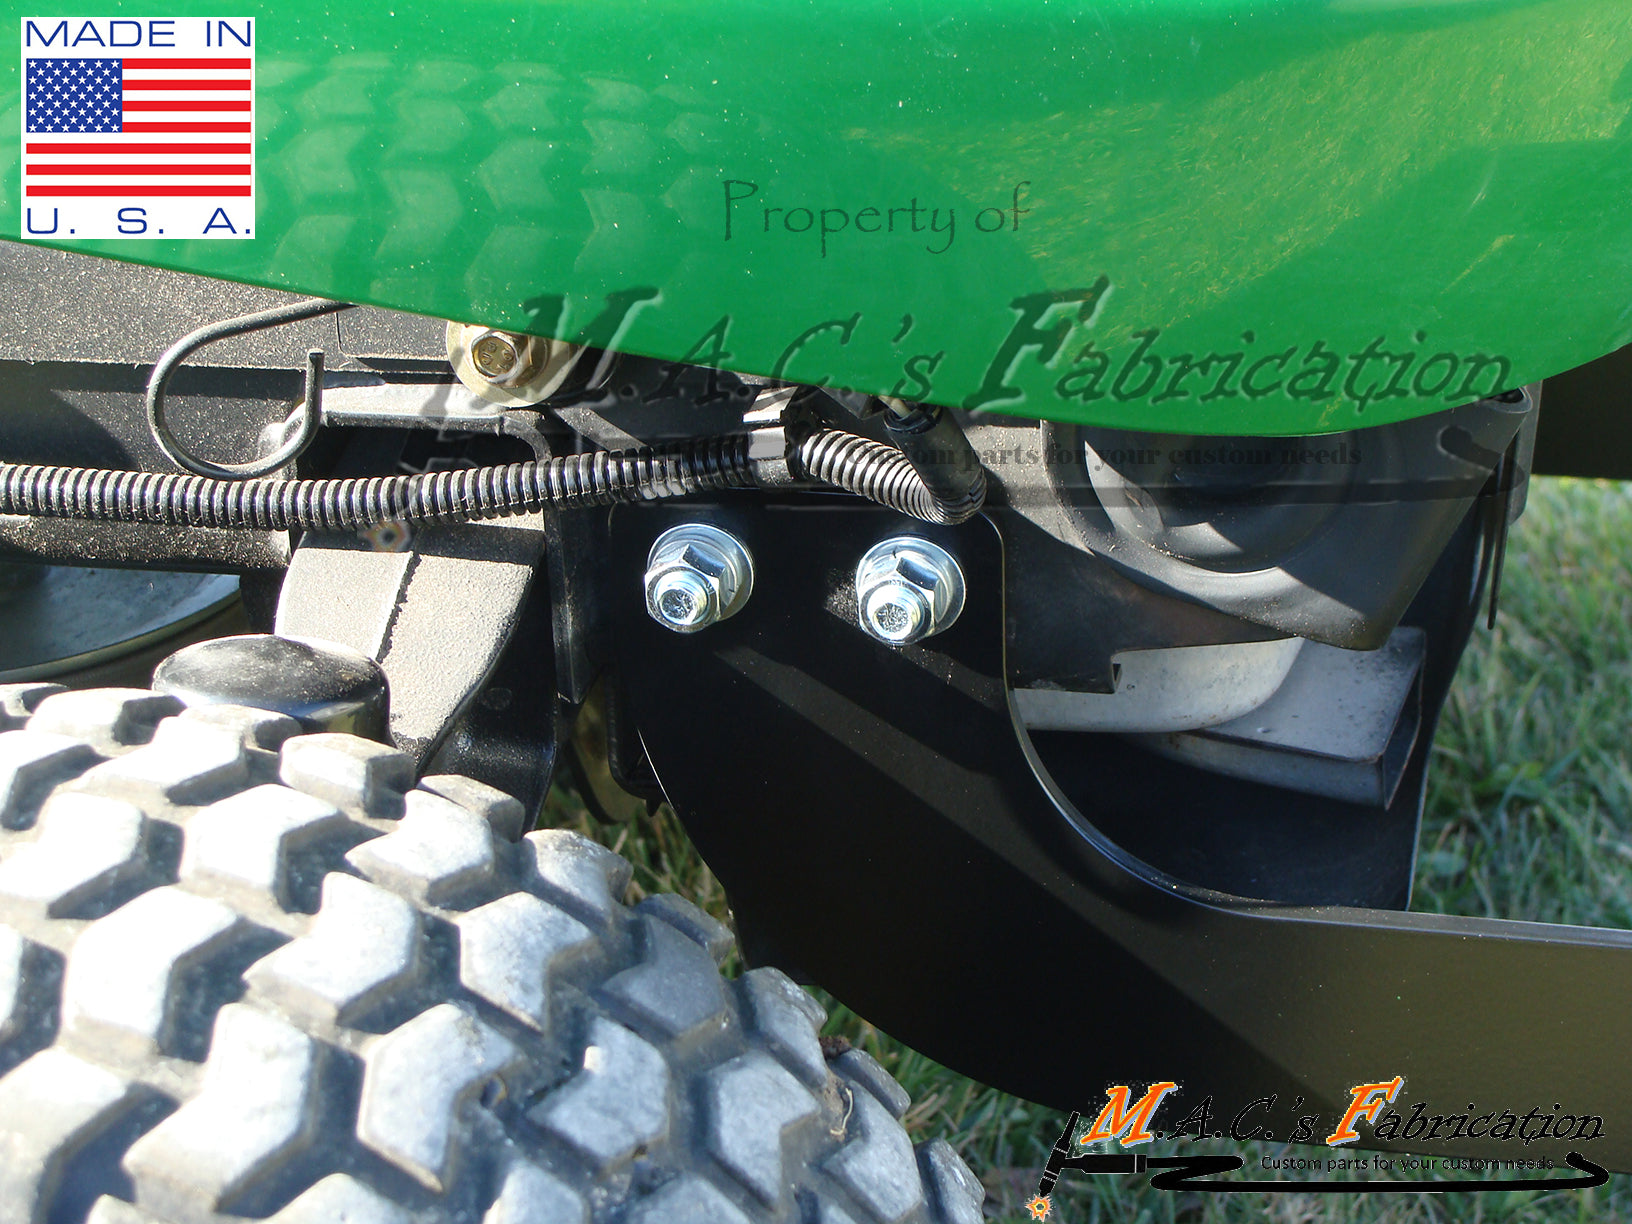 *NEW* John Deere Front "Hitch" Bumper Lawn Tractor LA100 LA105 LA110 LA115 LA120